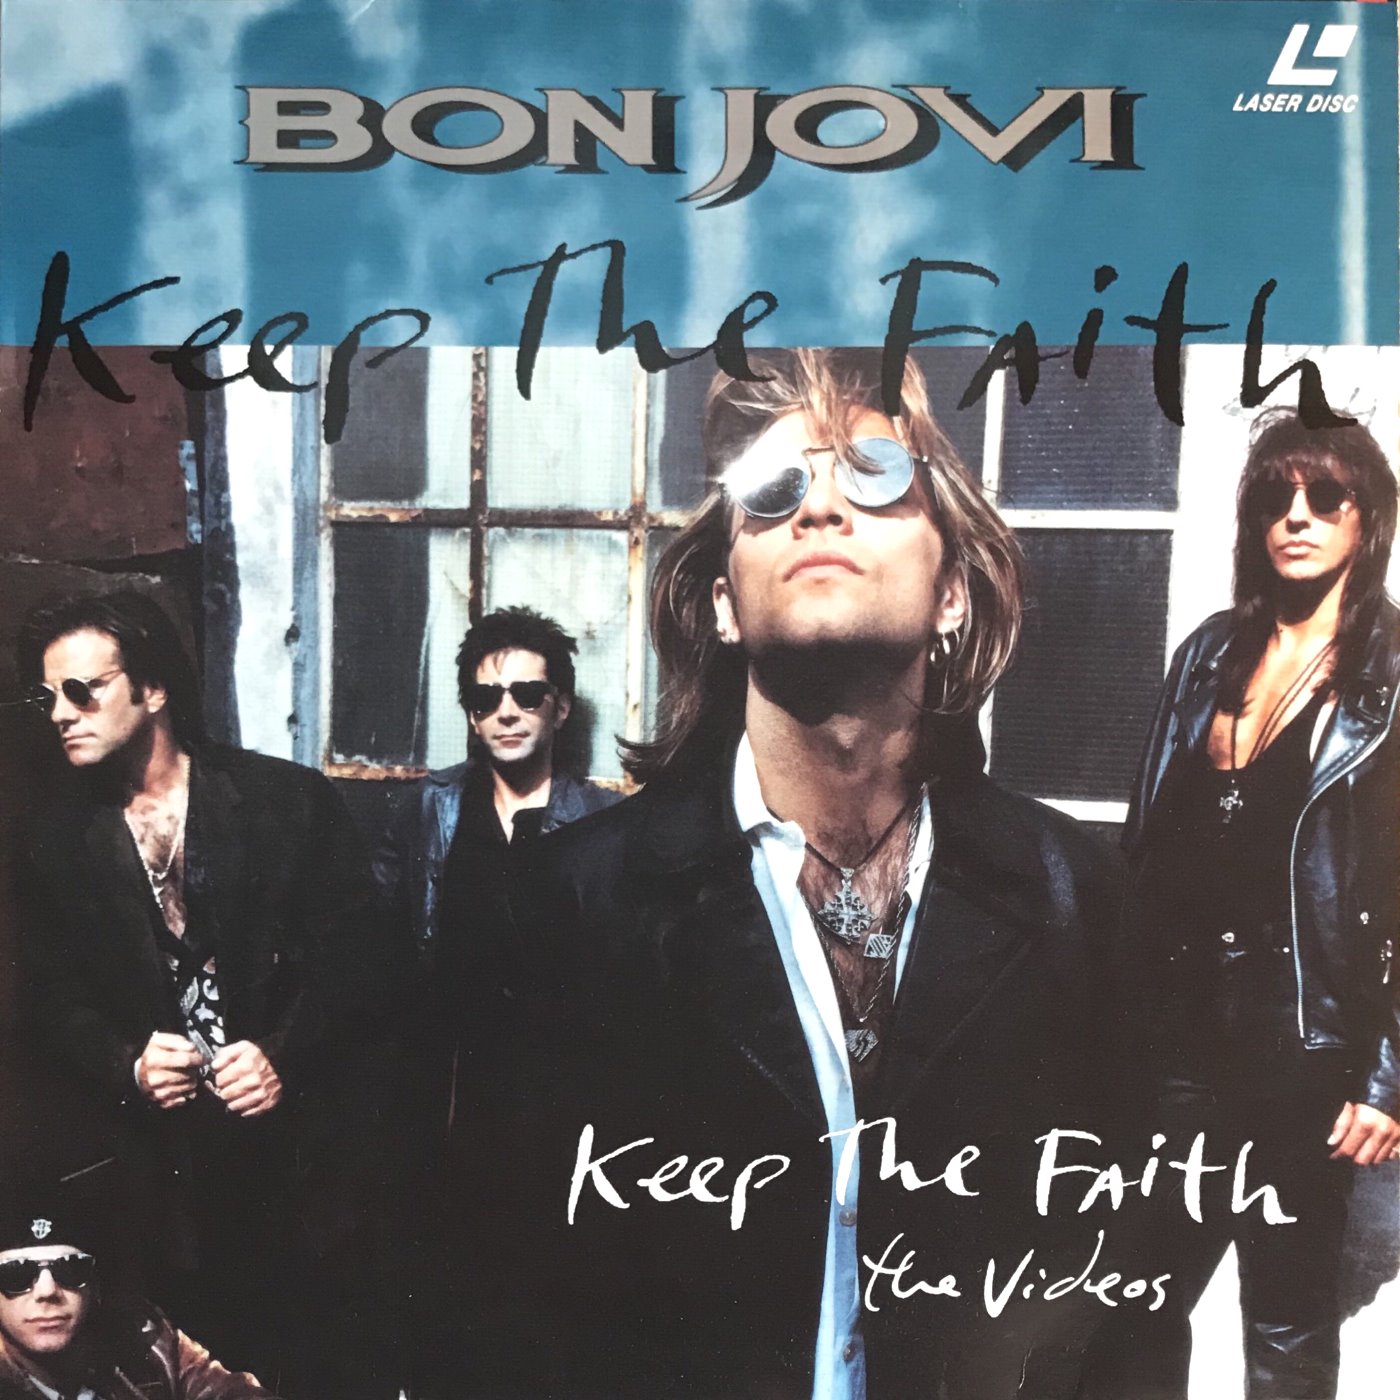 Cover - Bon Jovi - Keep The Faith - The Videos.jpg